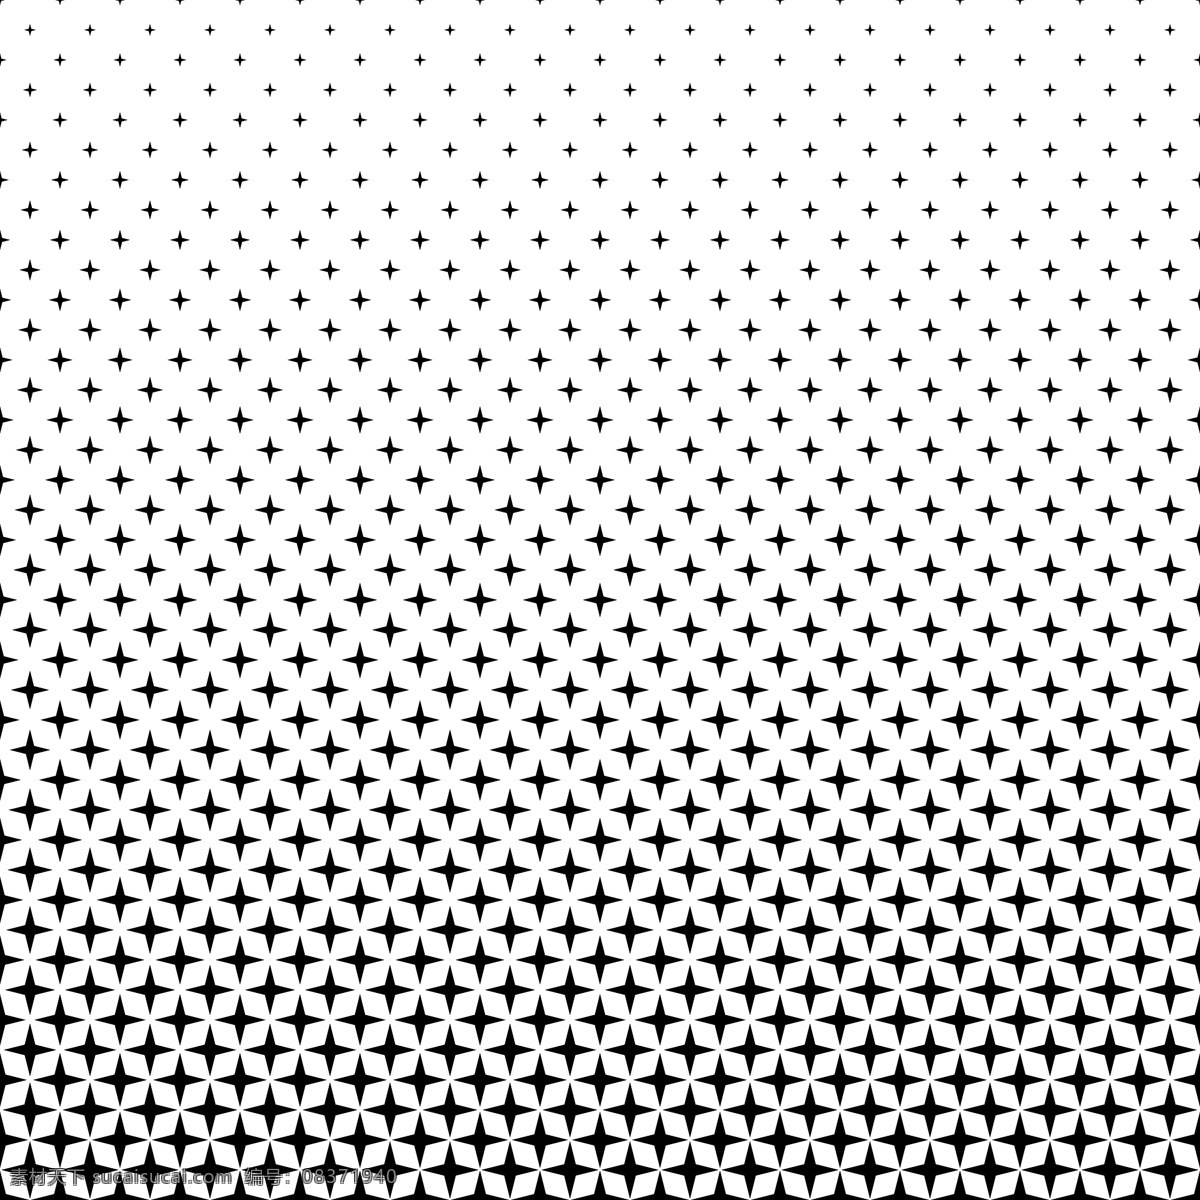 黑色 白色 星形 图案 背景 图形 小册子 抽象背景 海报 抽象 封面 明星 模板 几何 宣传册模板 黑色背景 布局 墙纸 几何图案 网络 演示 几何背景